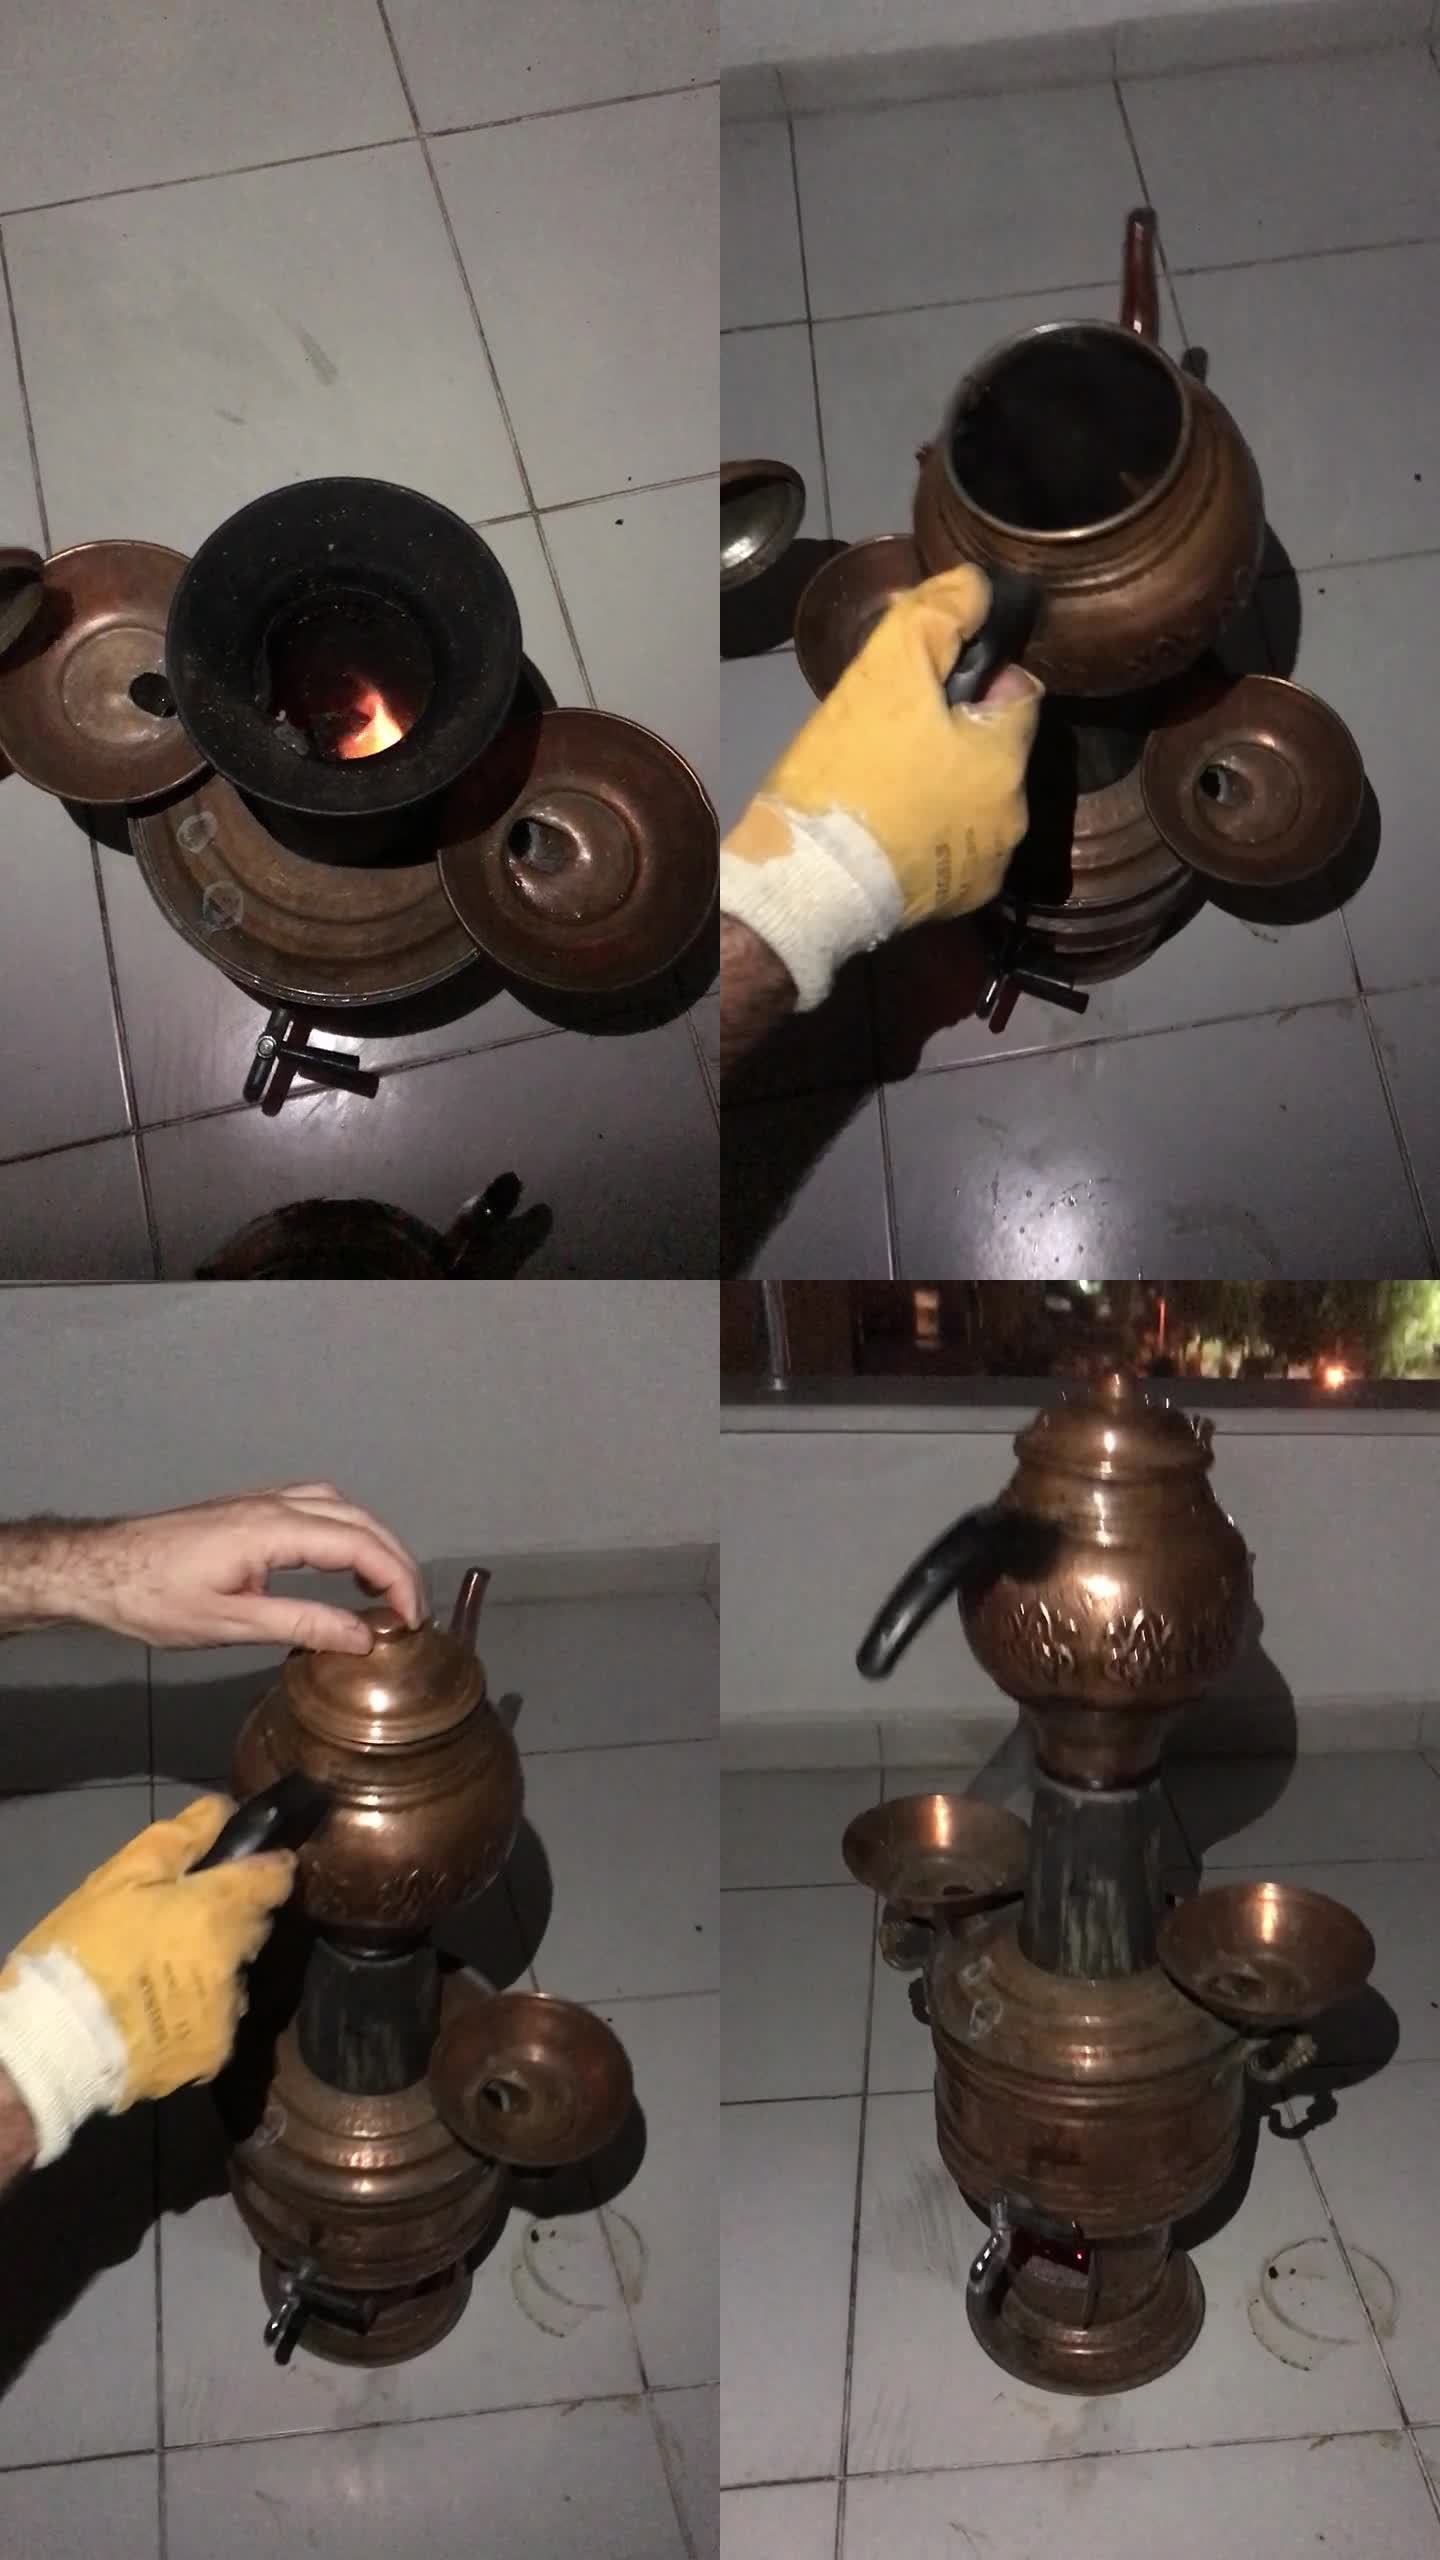 木头上的土耳其茶炊。一个人把开水倒进壶里，放在火上。外面是晚上。垂直视频。